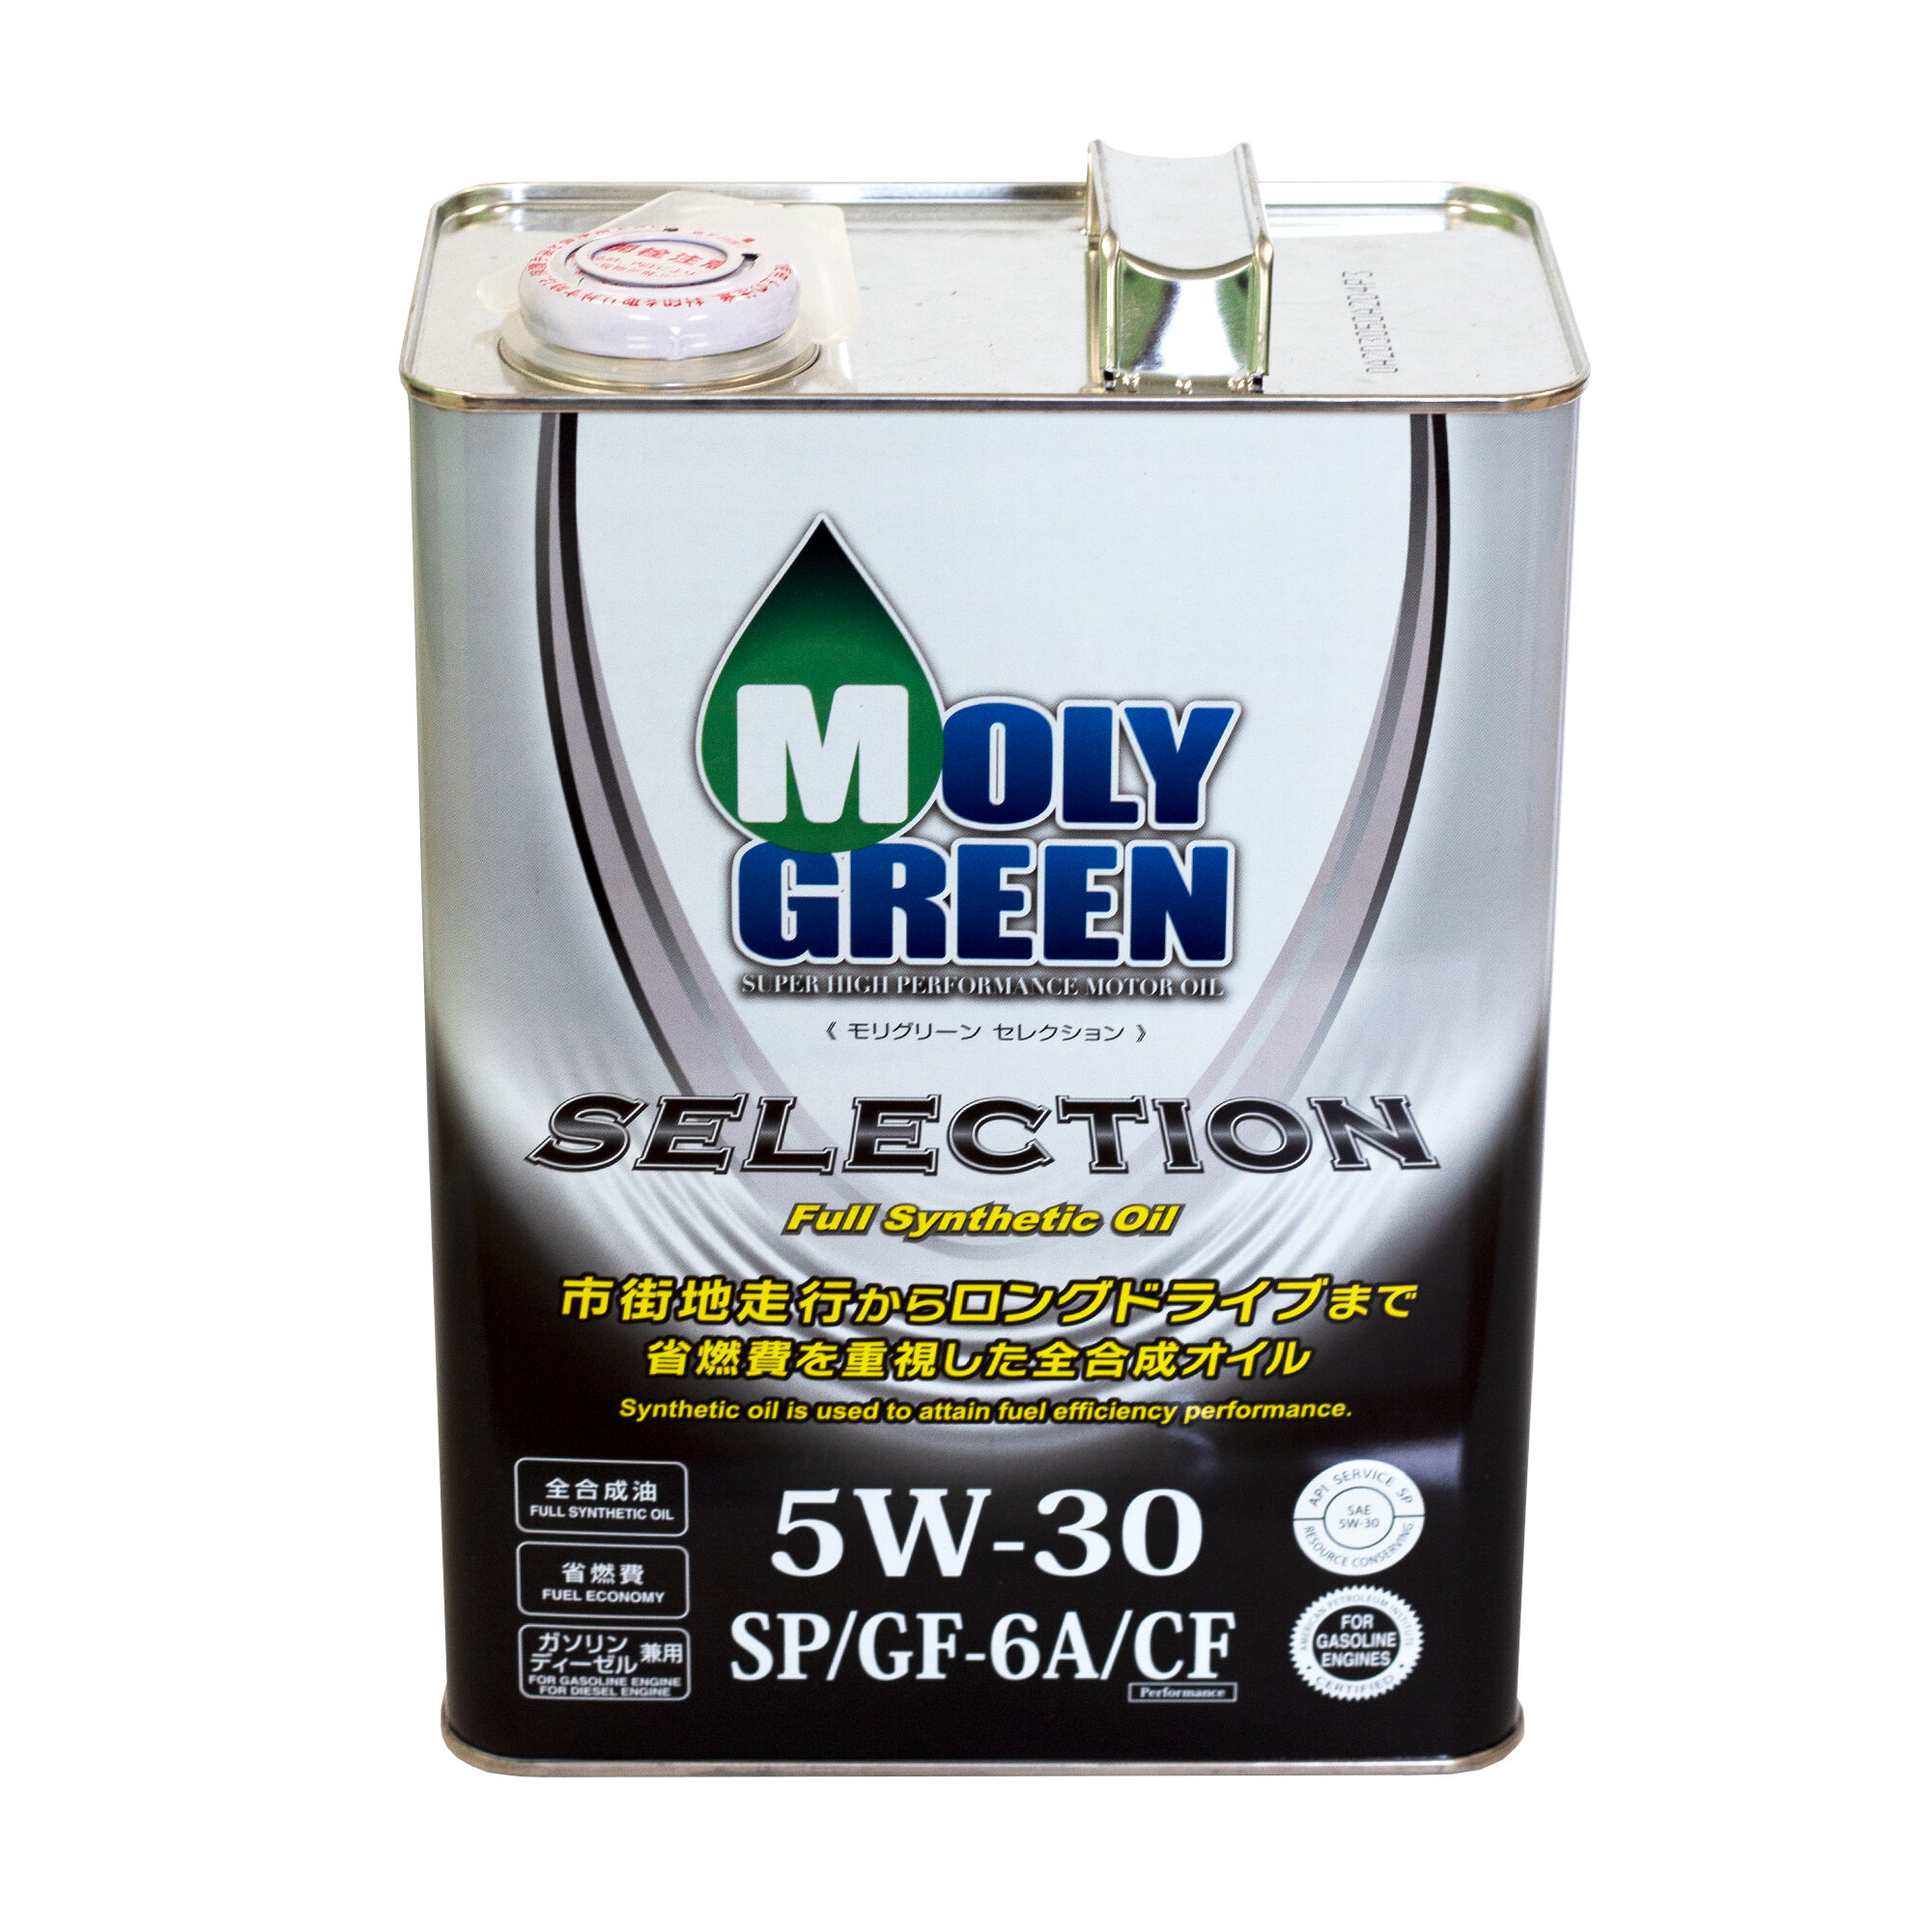 Синтетическое моторное масло MolyGreen Selection 5W-30 SN/GF-5